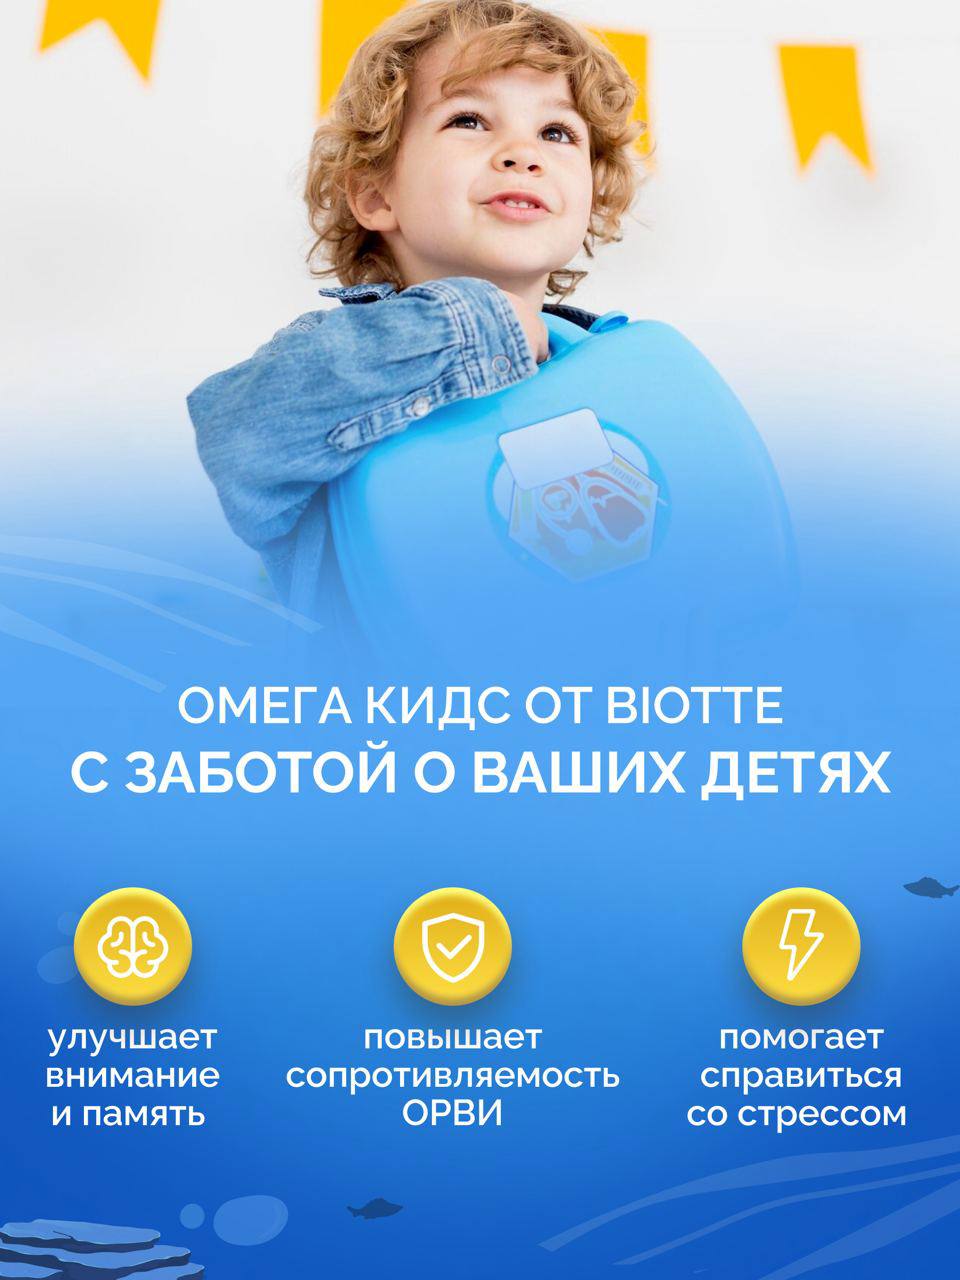 Омега-3 форте BIOTTE 790 mg fish oil премиум рыбий жир для детей подростков взрослых 90 капсул - фото 2